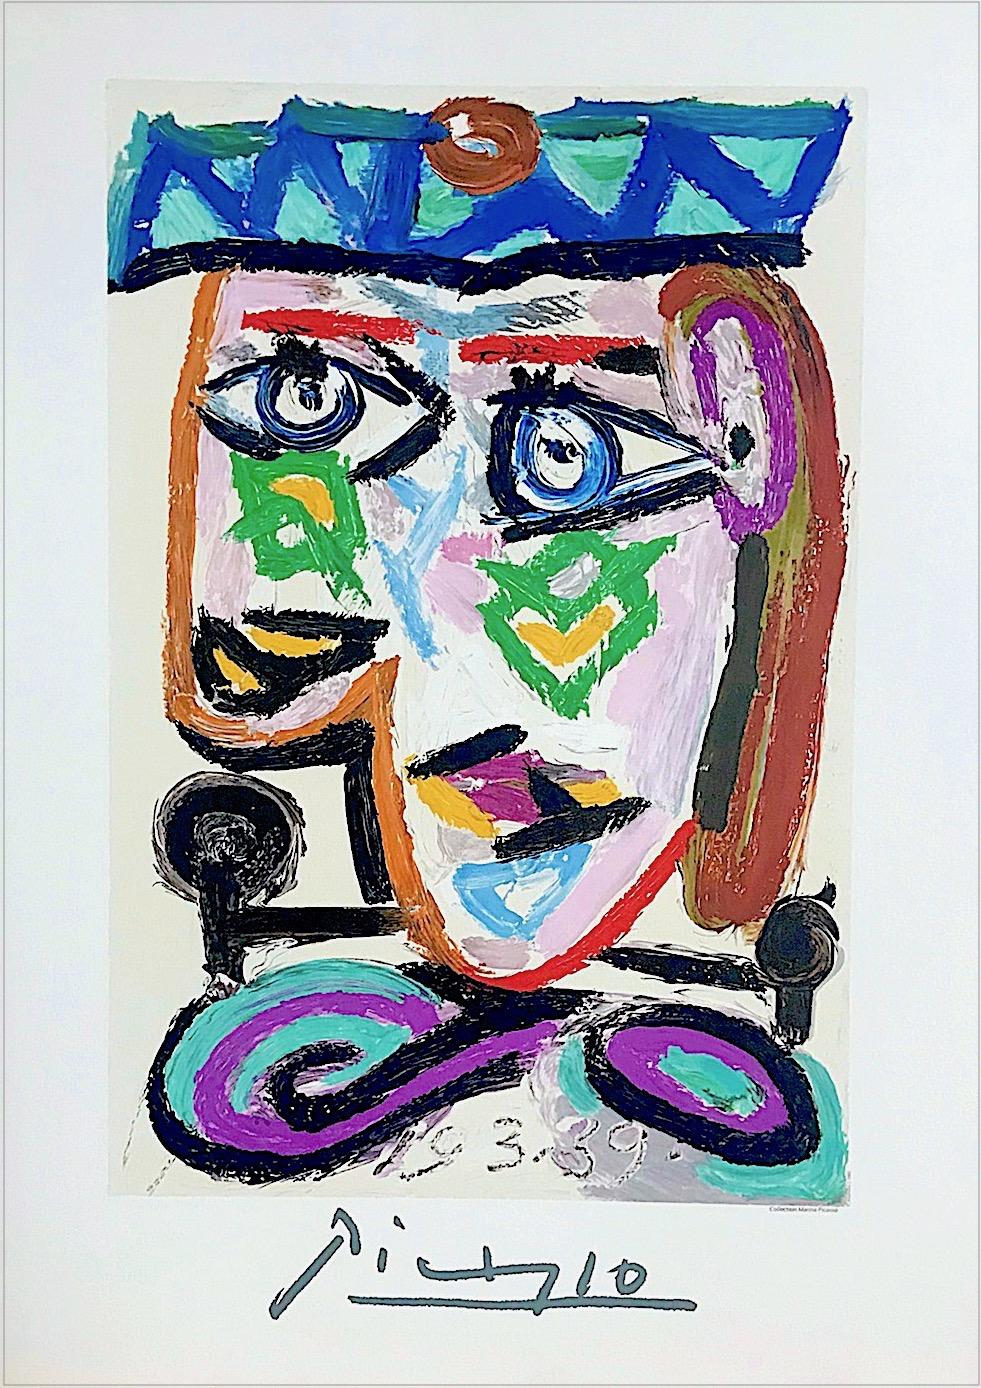 Femme au Beret, Lithograph, Abstract Head Portrait, Beret, Rainbow Colors